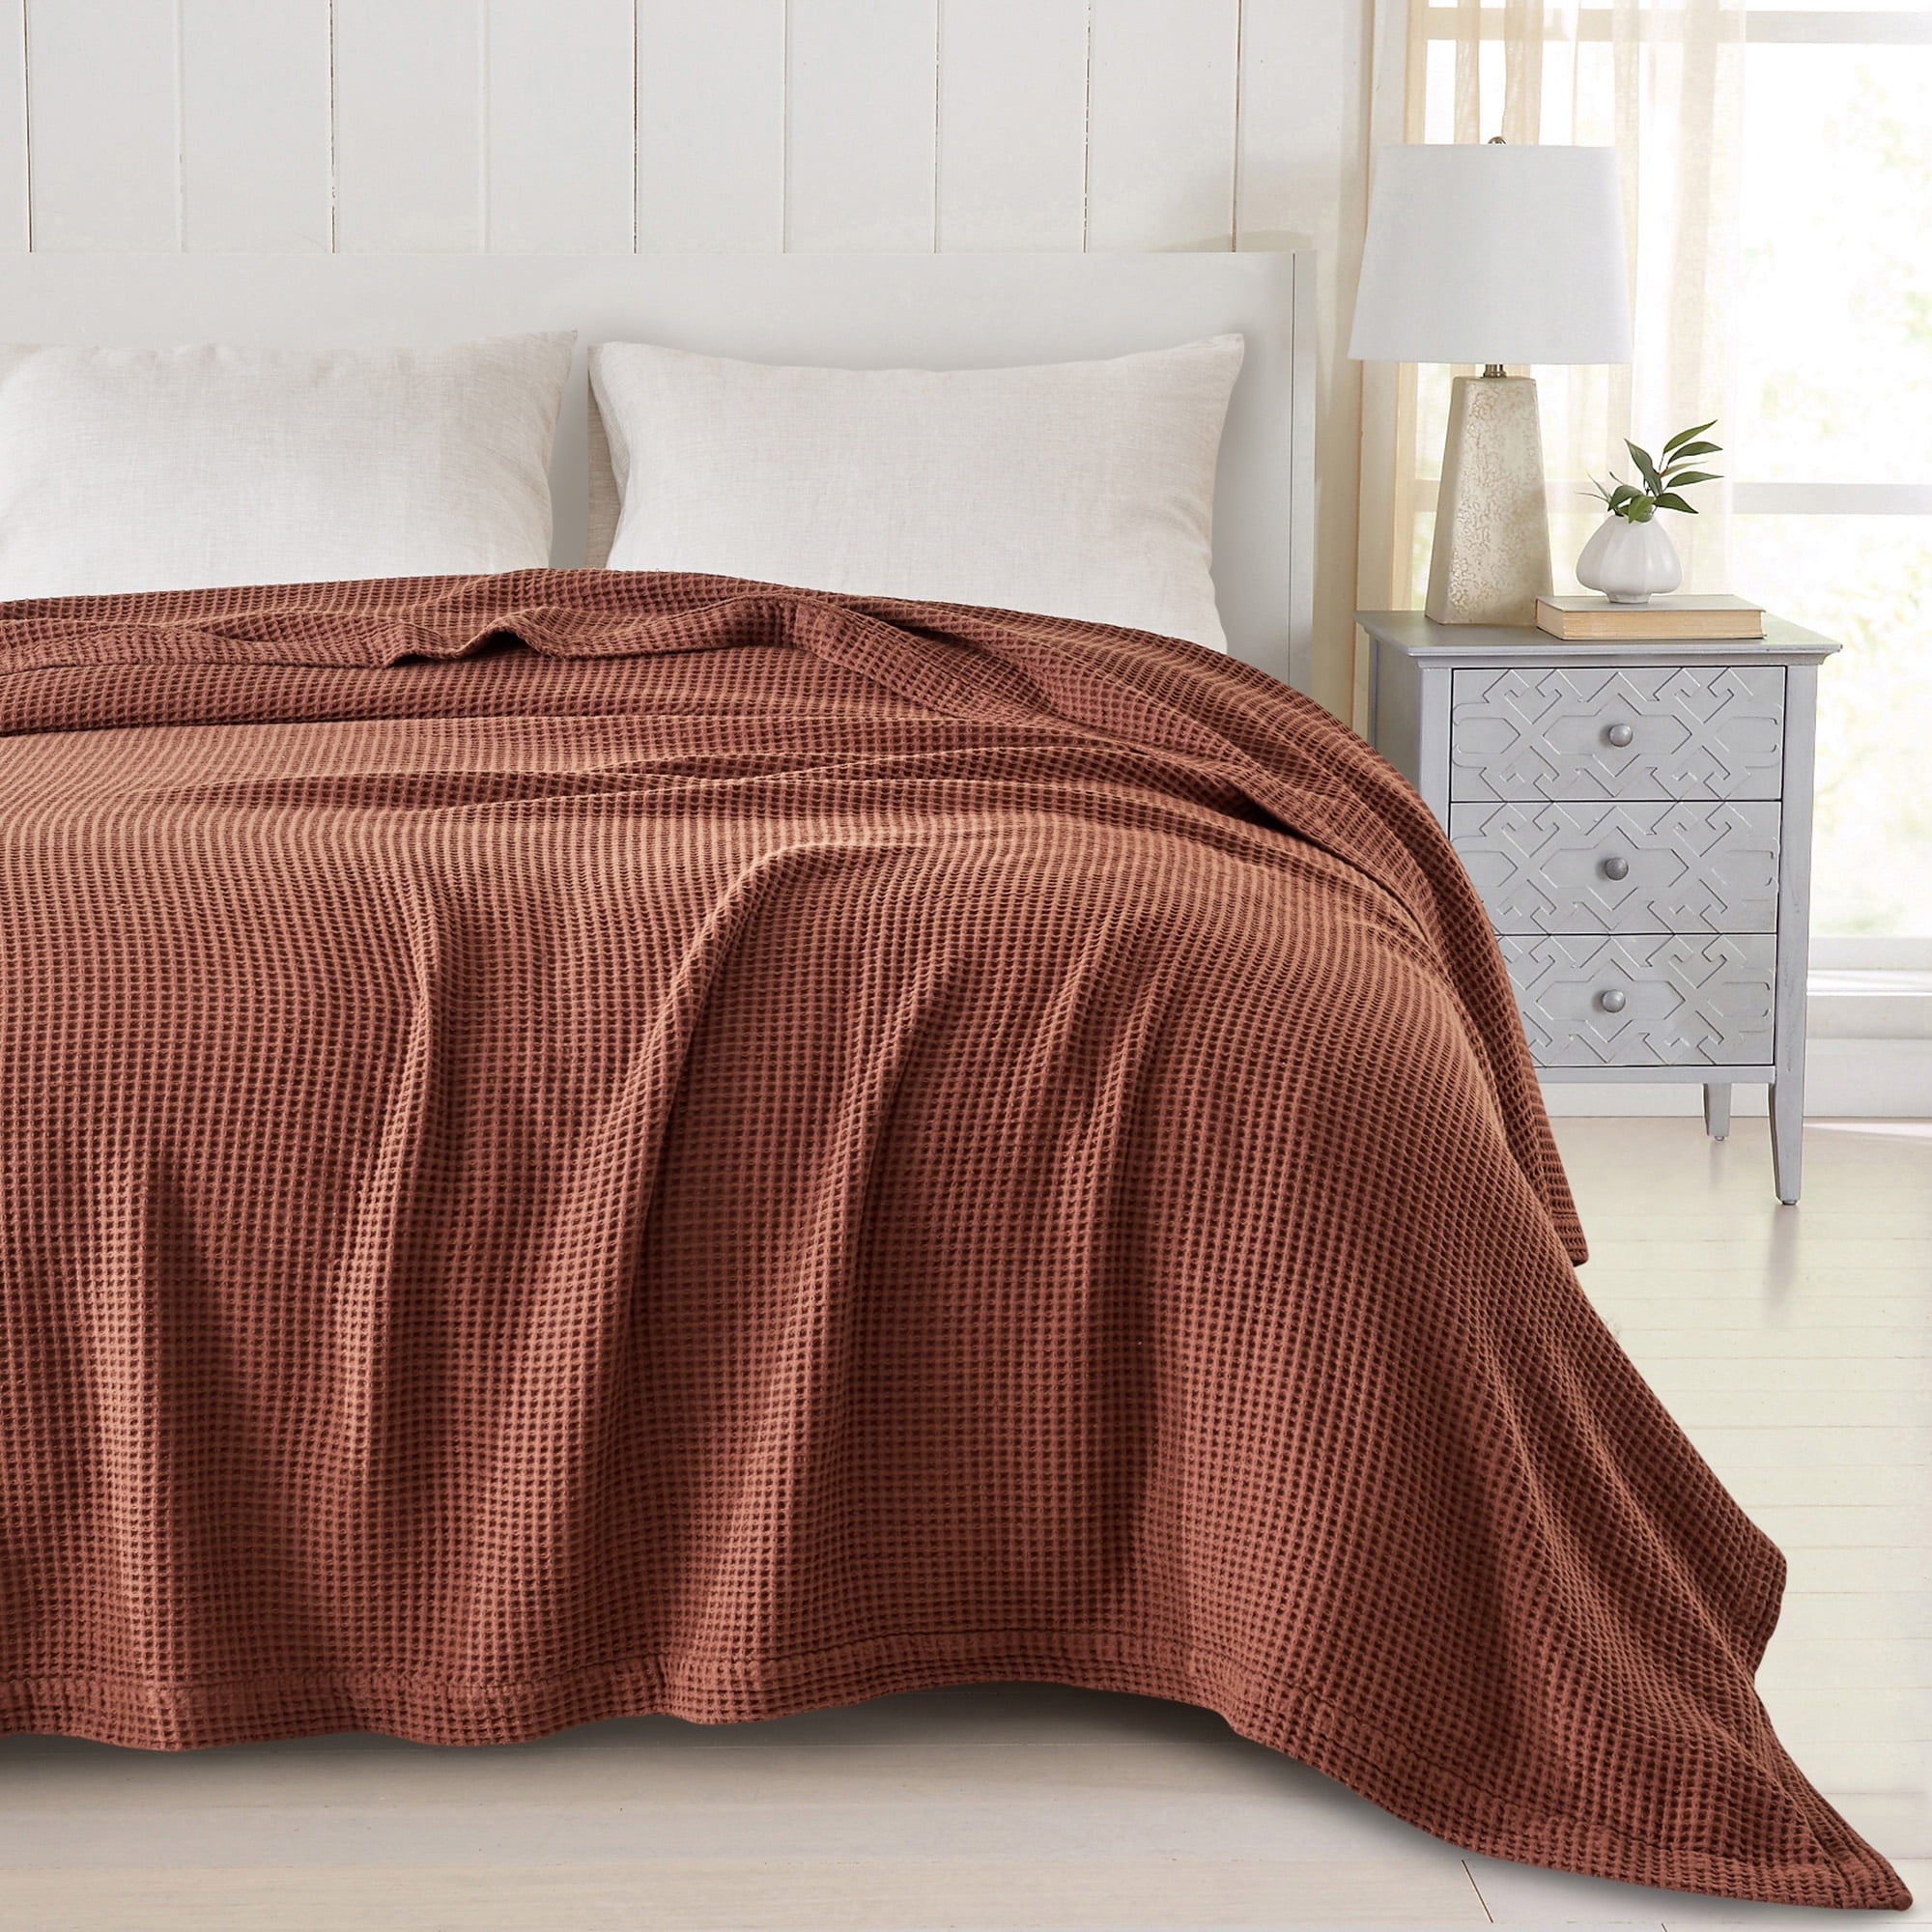 FRESHFOLDS Beige 100% Cotton Twin Lightweight Waffle Weave Blanket, Brown